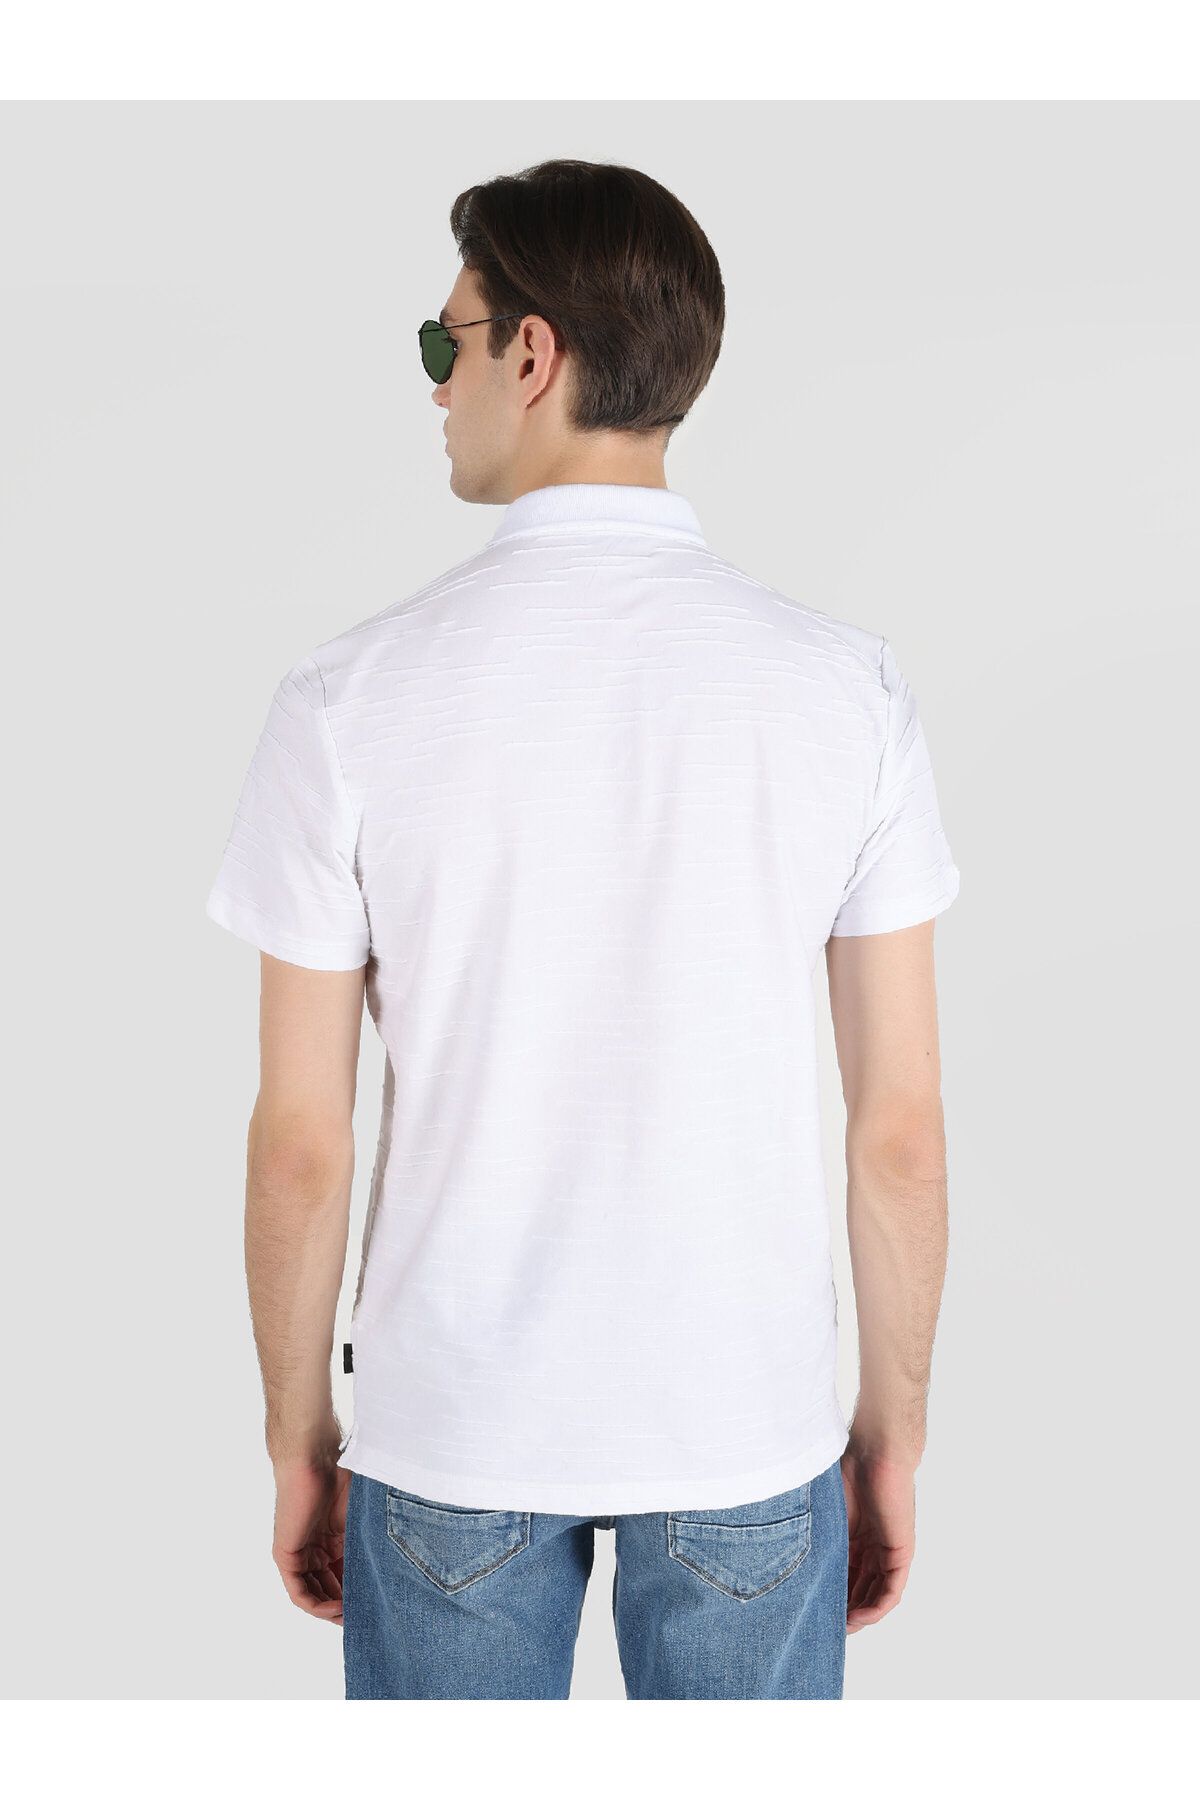 Colin’s تی شرت آستین کوتاه یقه دار مردانه سفید با تناسب معمولی